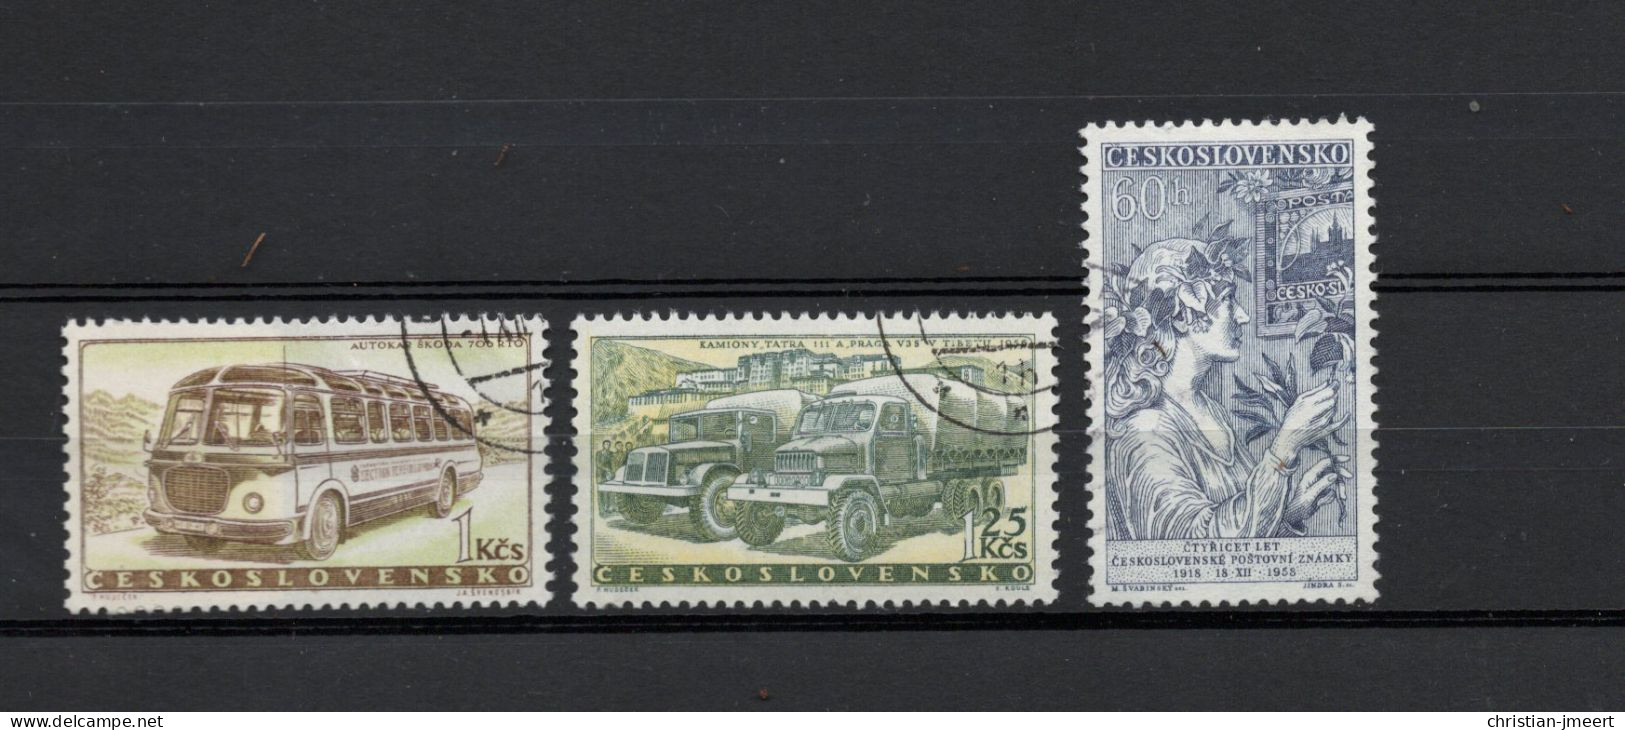 collection Tchécoslovaquie 1949/59 en parfaite état